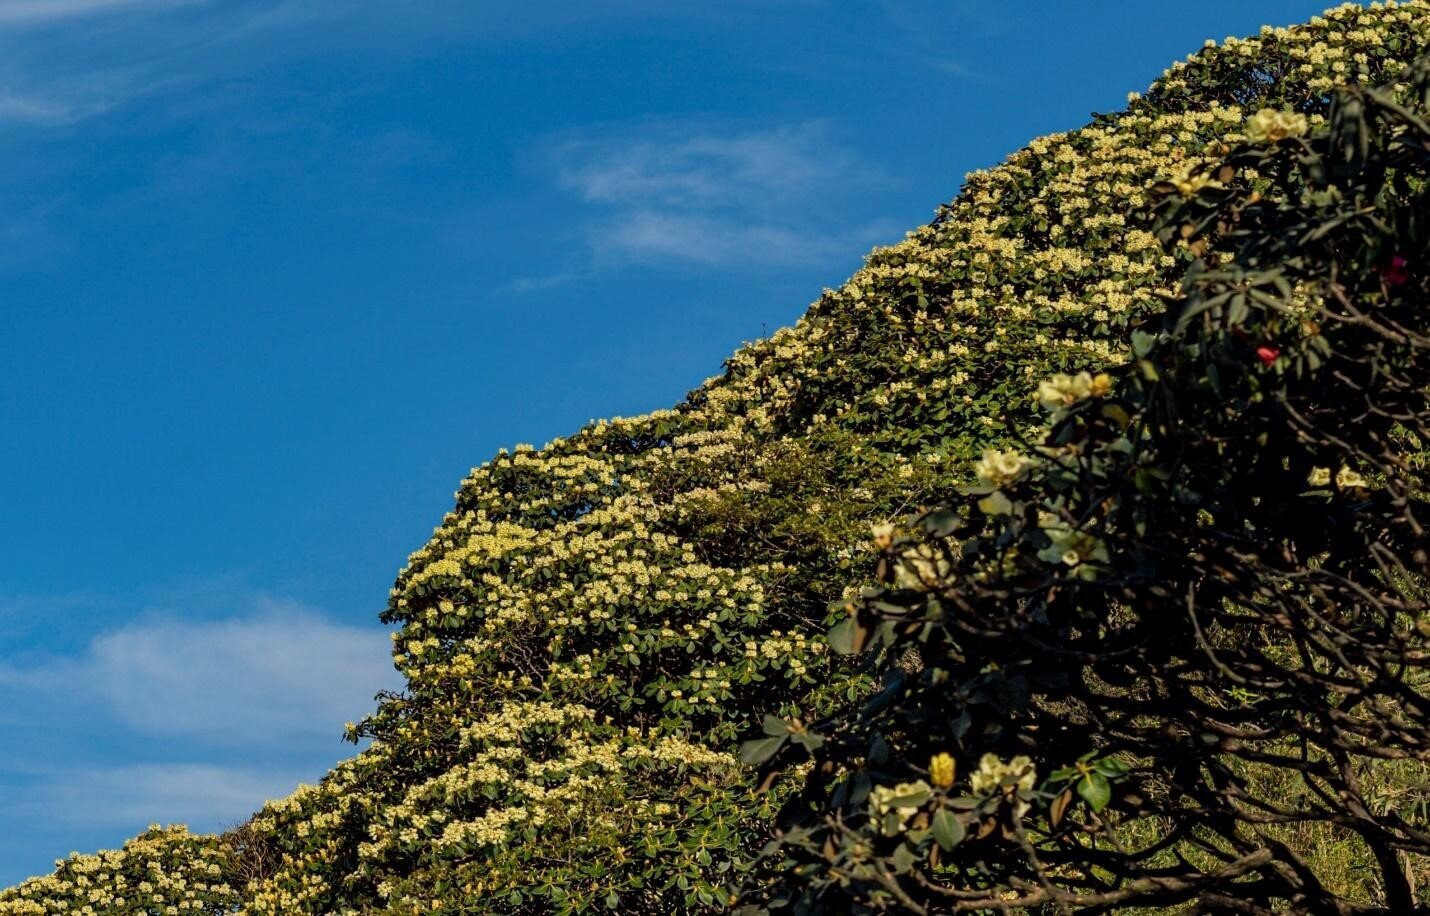 Mỗi dịp tháng 4 về, núi rừng Hoàng Liên Sơn (Sa Pa) như được thắp sáng bởi những thảm hoa Đỗ quyên bung nở rực rỡ. Nơi đây sở hữu 40 loài Đỗ quyên quý hiếm, nở từng đợt tùy theo màu hoa và độ cao của núi, suốt từ khoảng tháng 2 đến hết tháng 6 hàng năm.